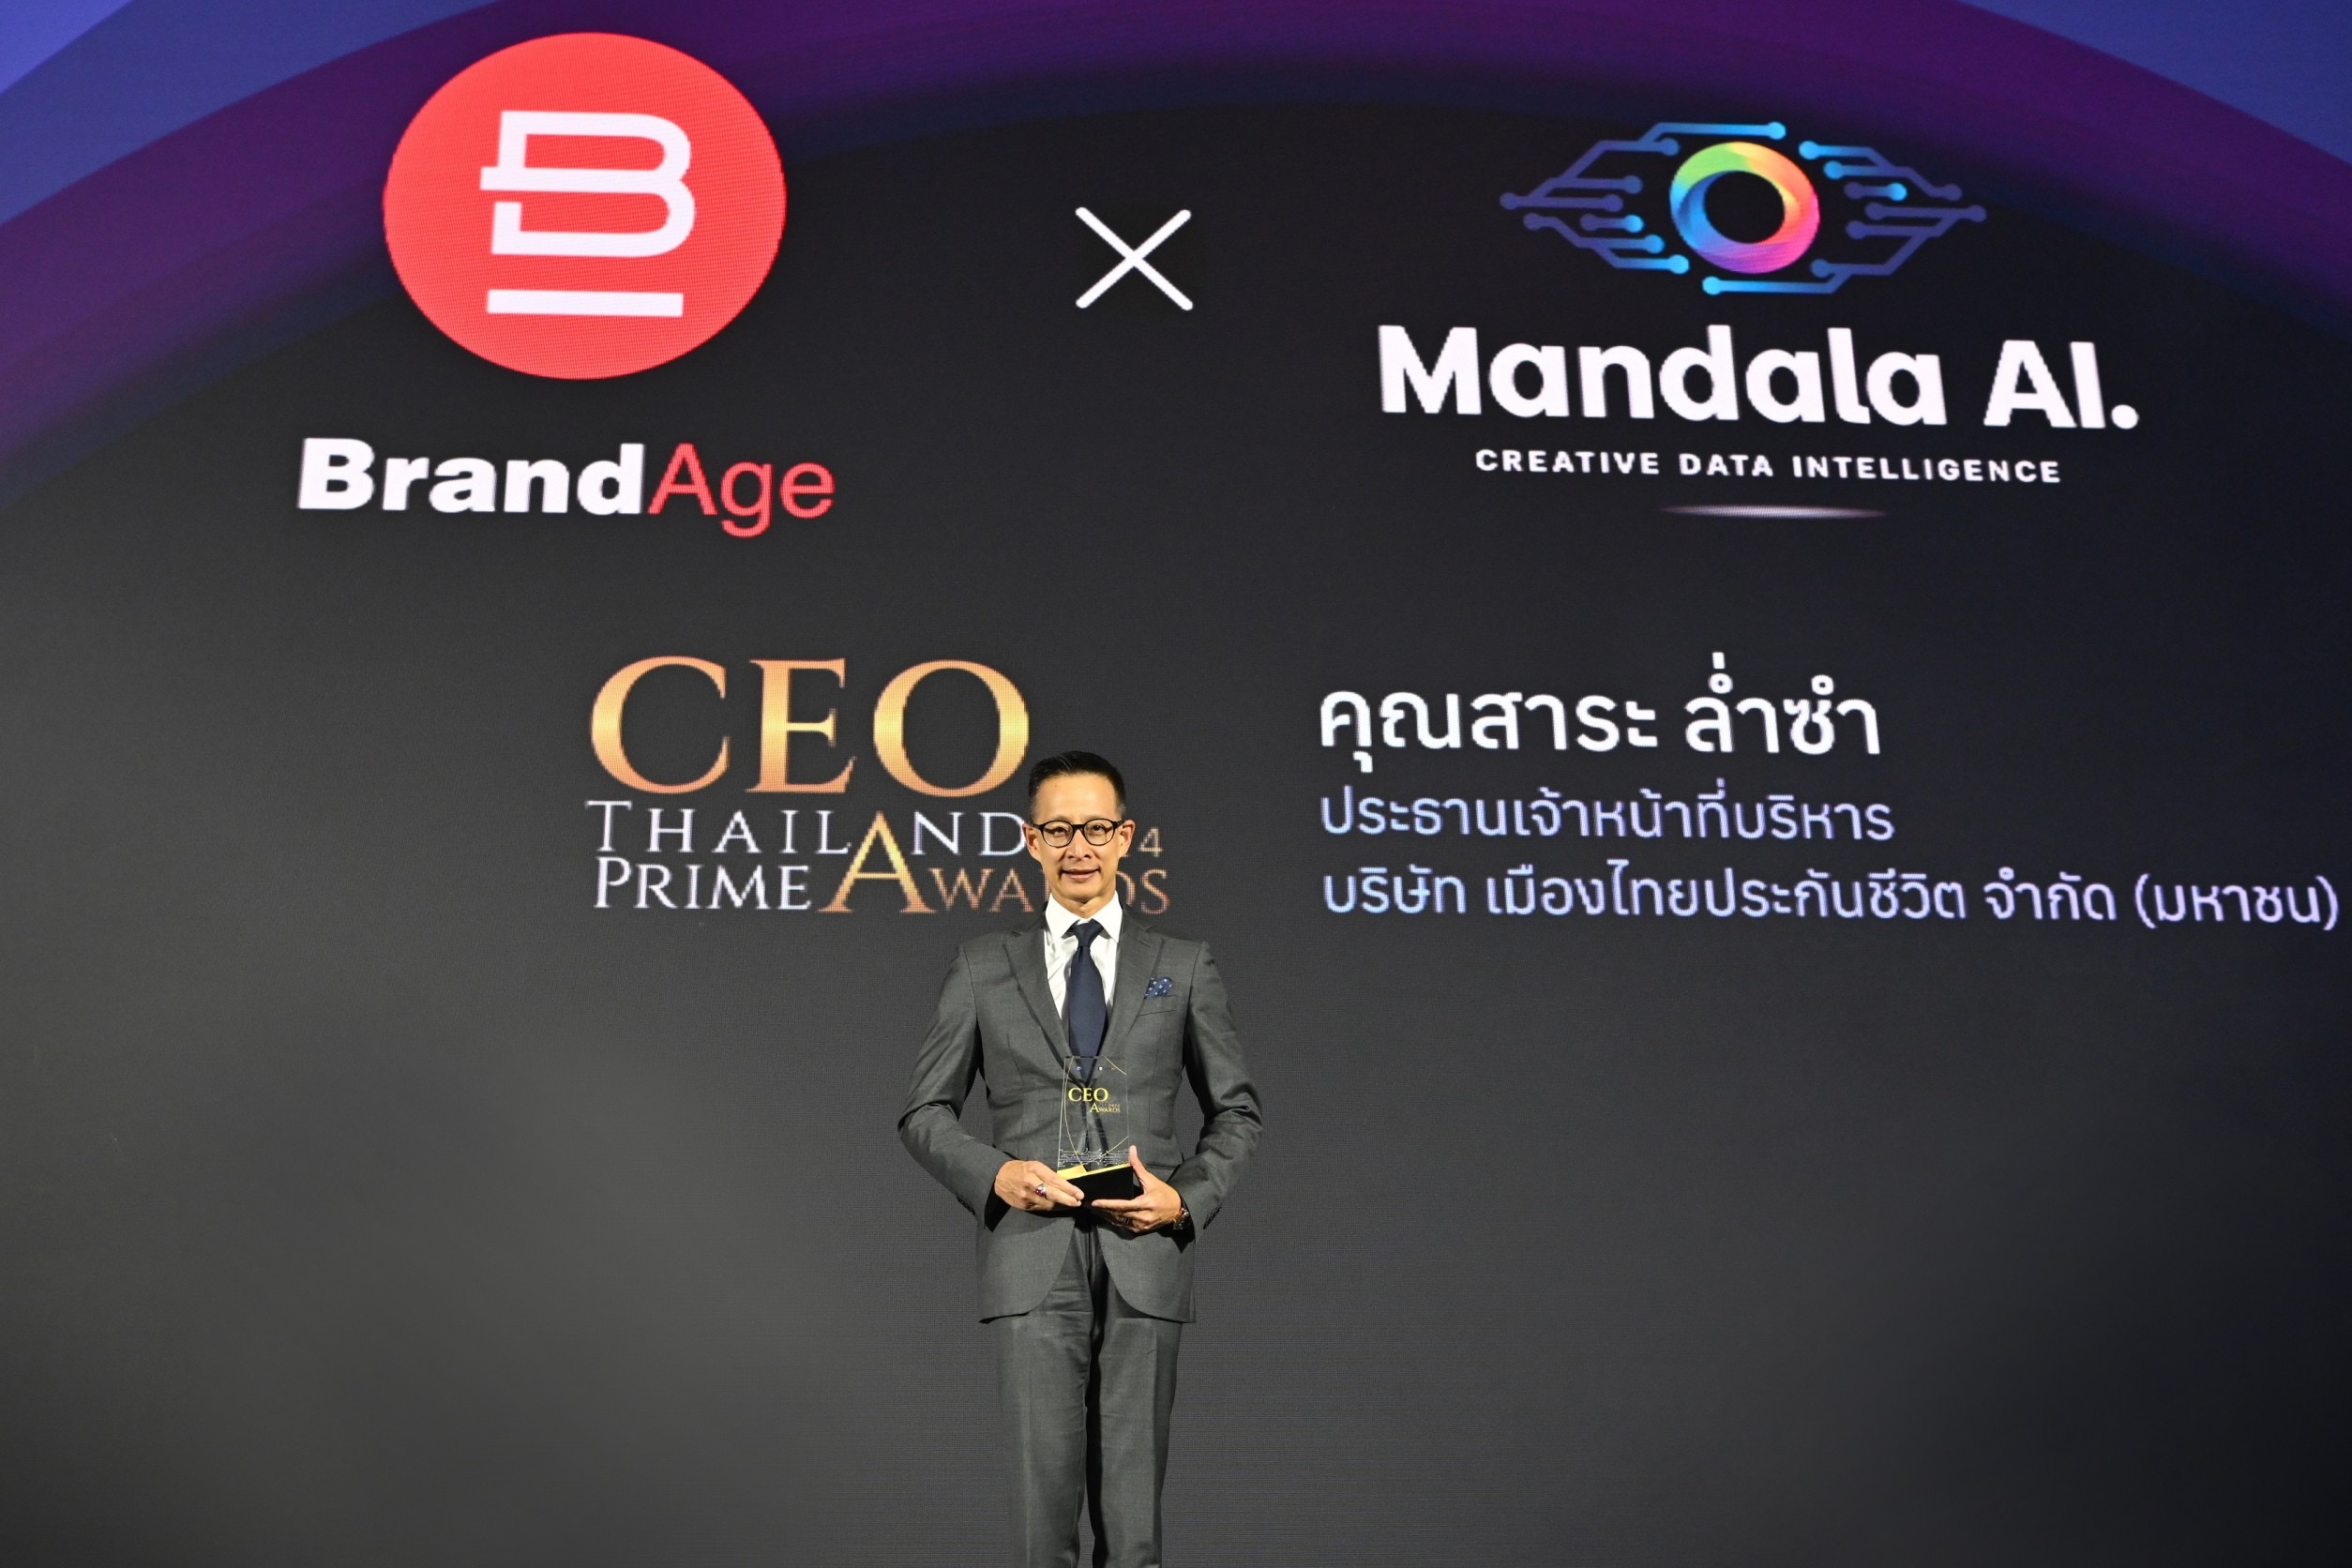 “สาระ ล่ำซำ” รับรางวัล CEO Thailand Prime Awards เป็นคนแรกของการจัดมอบรางวัล